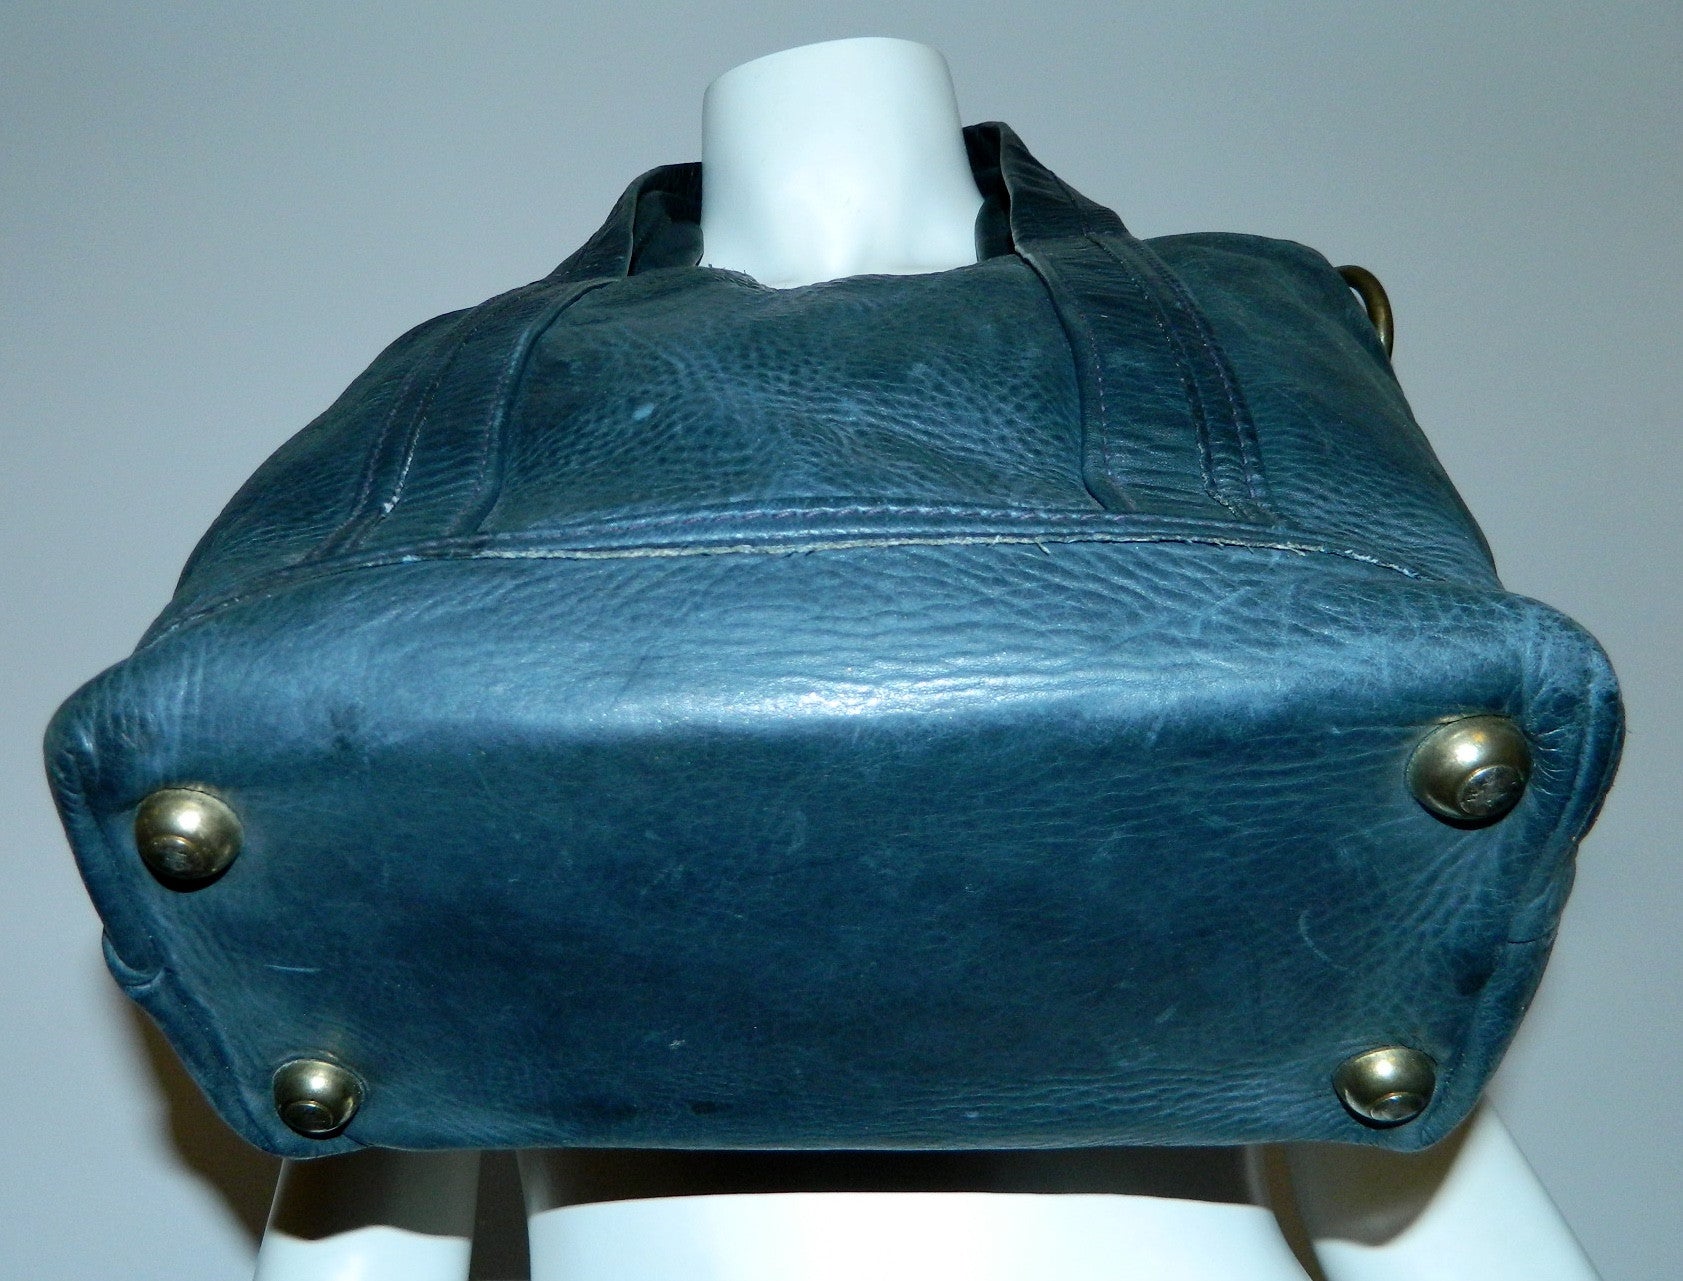 vintage blue saddle leather tote bag Lee Stemer for Ronay handbag purse 1970s